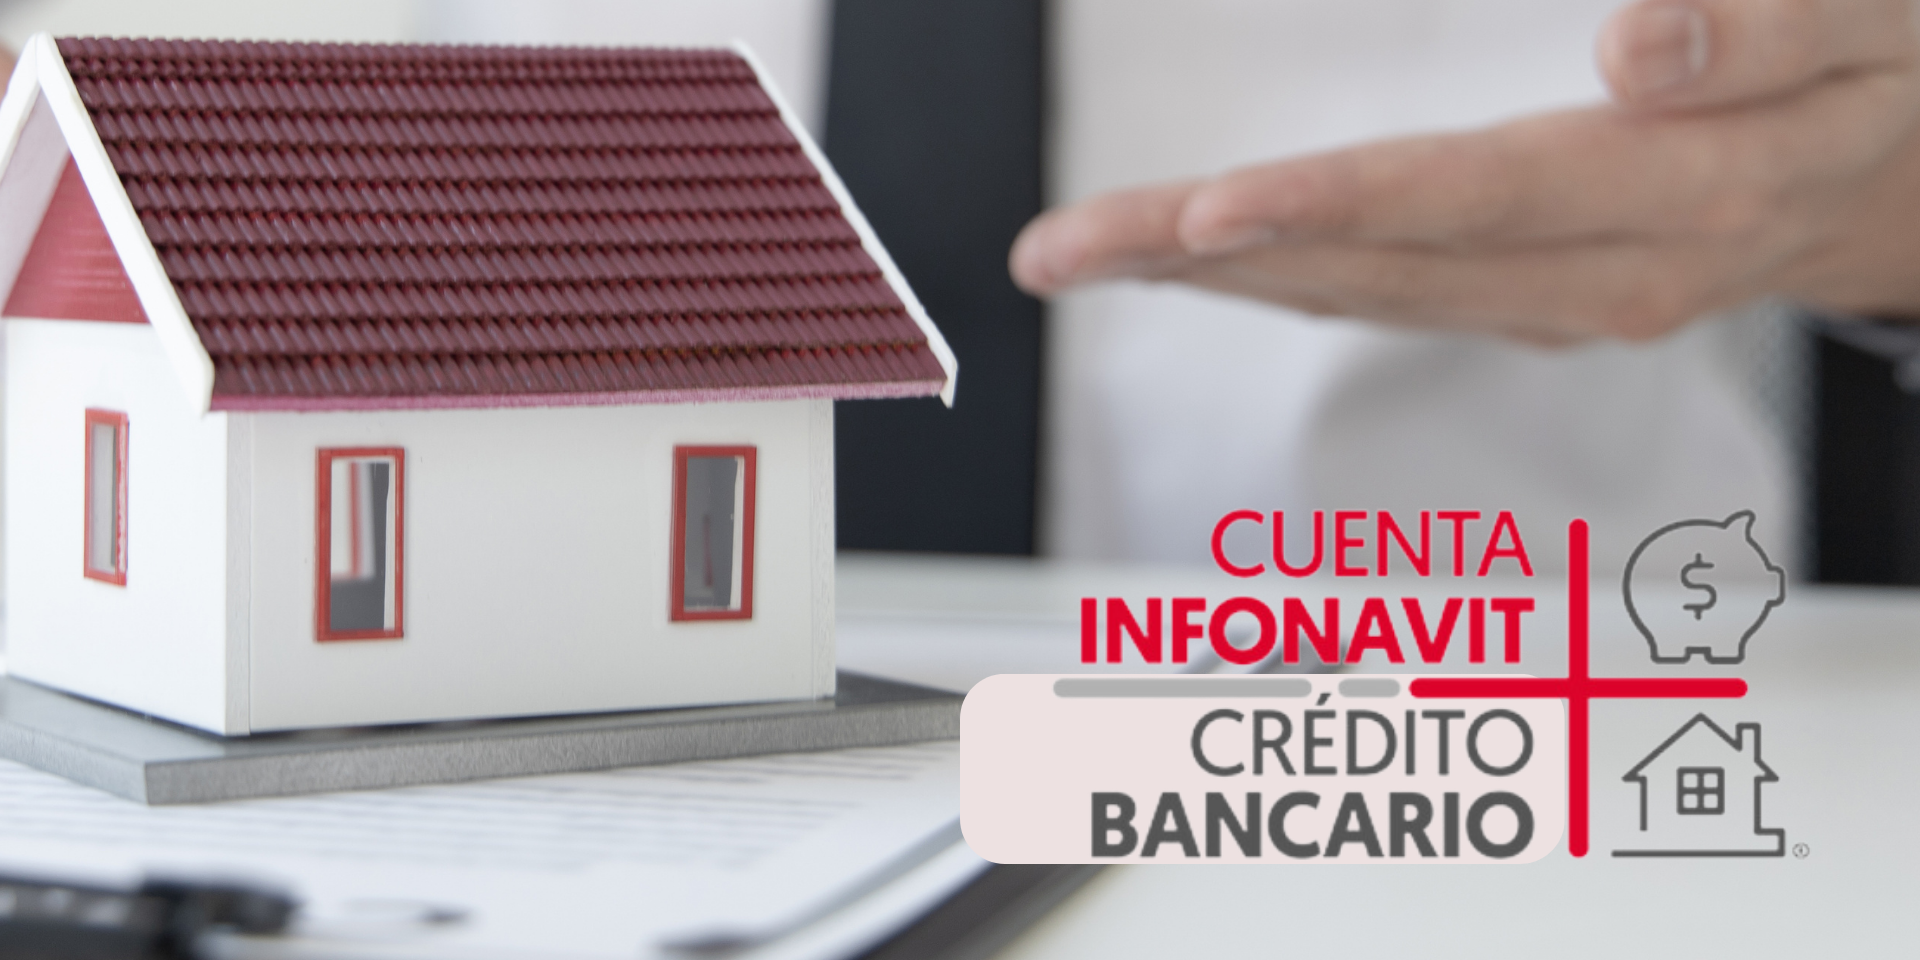 Infonavit anuncia la nueva modalidad Cuenta Infonavit + Crédito Bancario para trabajadores independientes, permitiéndoles comprar una casa.